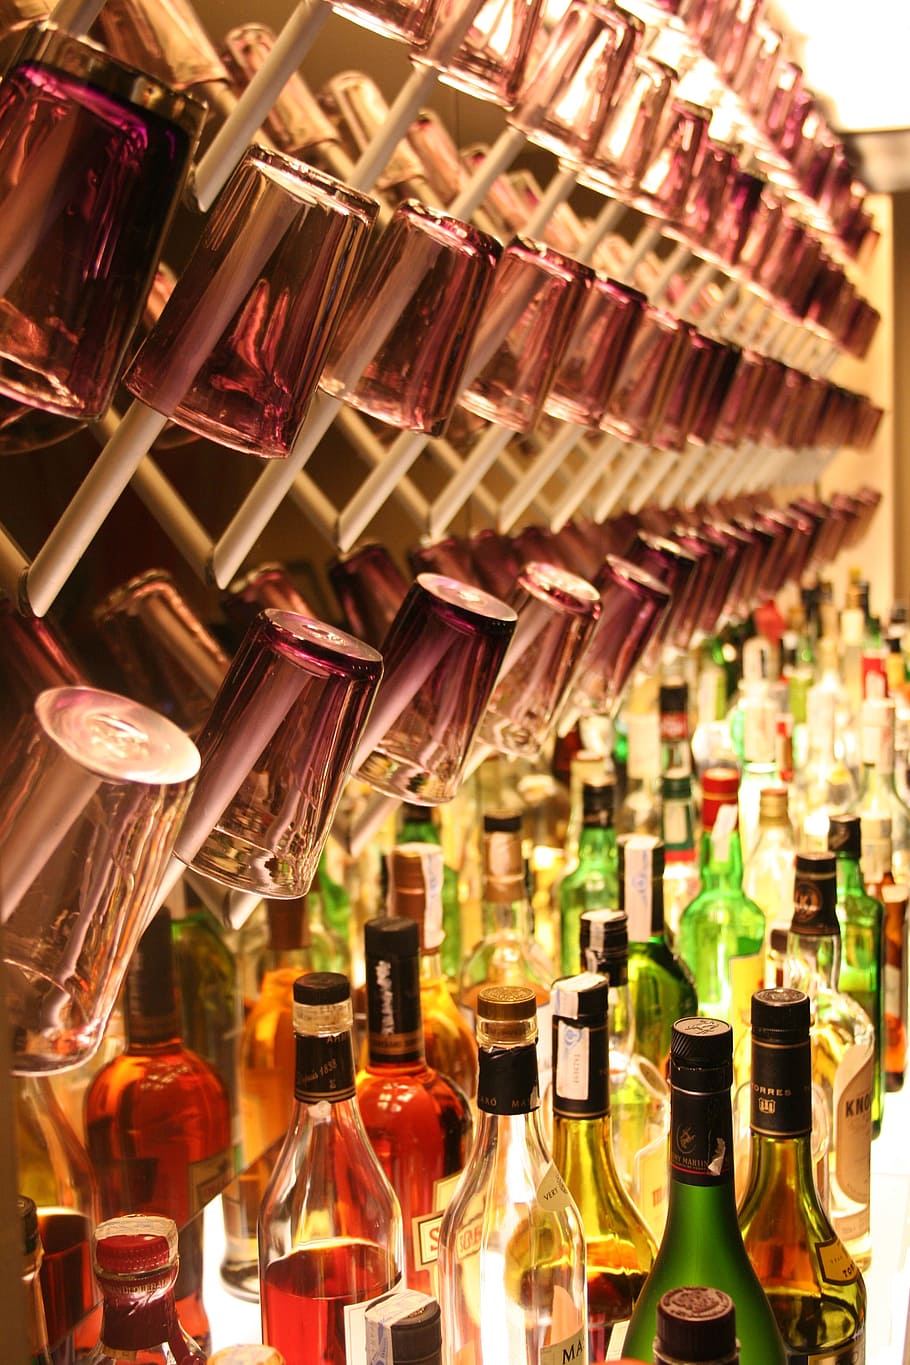 gelas minum, rak, botol anggur, meja, bar koktail, minuman, alkohol, gelas, botol, hotel